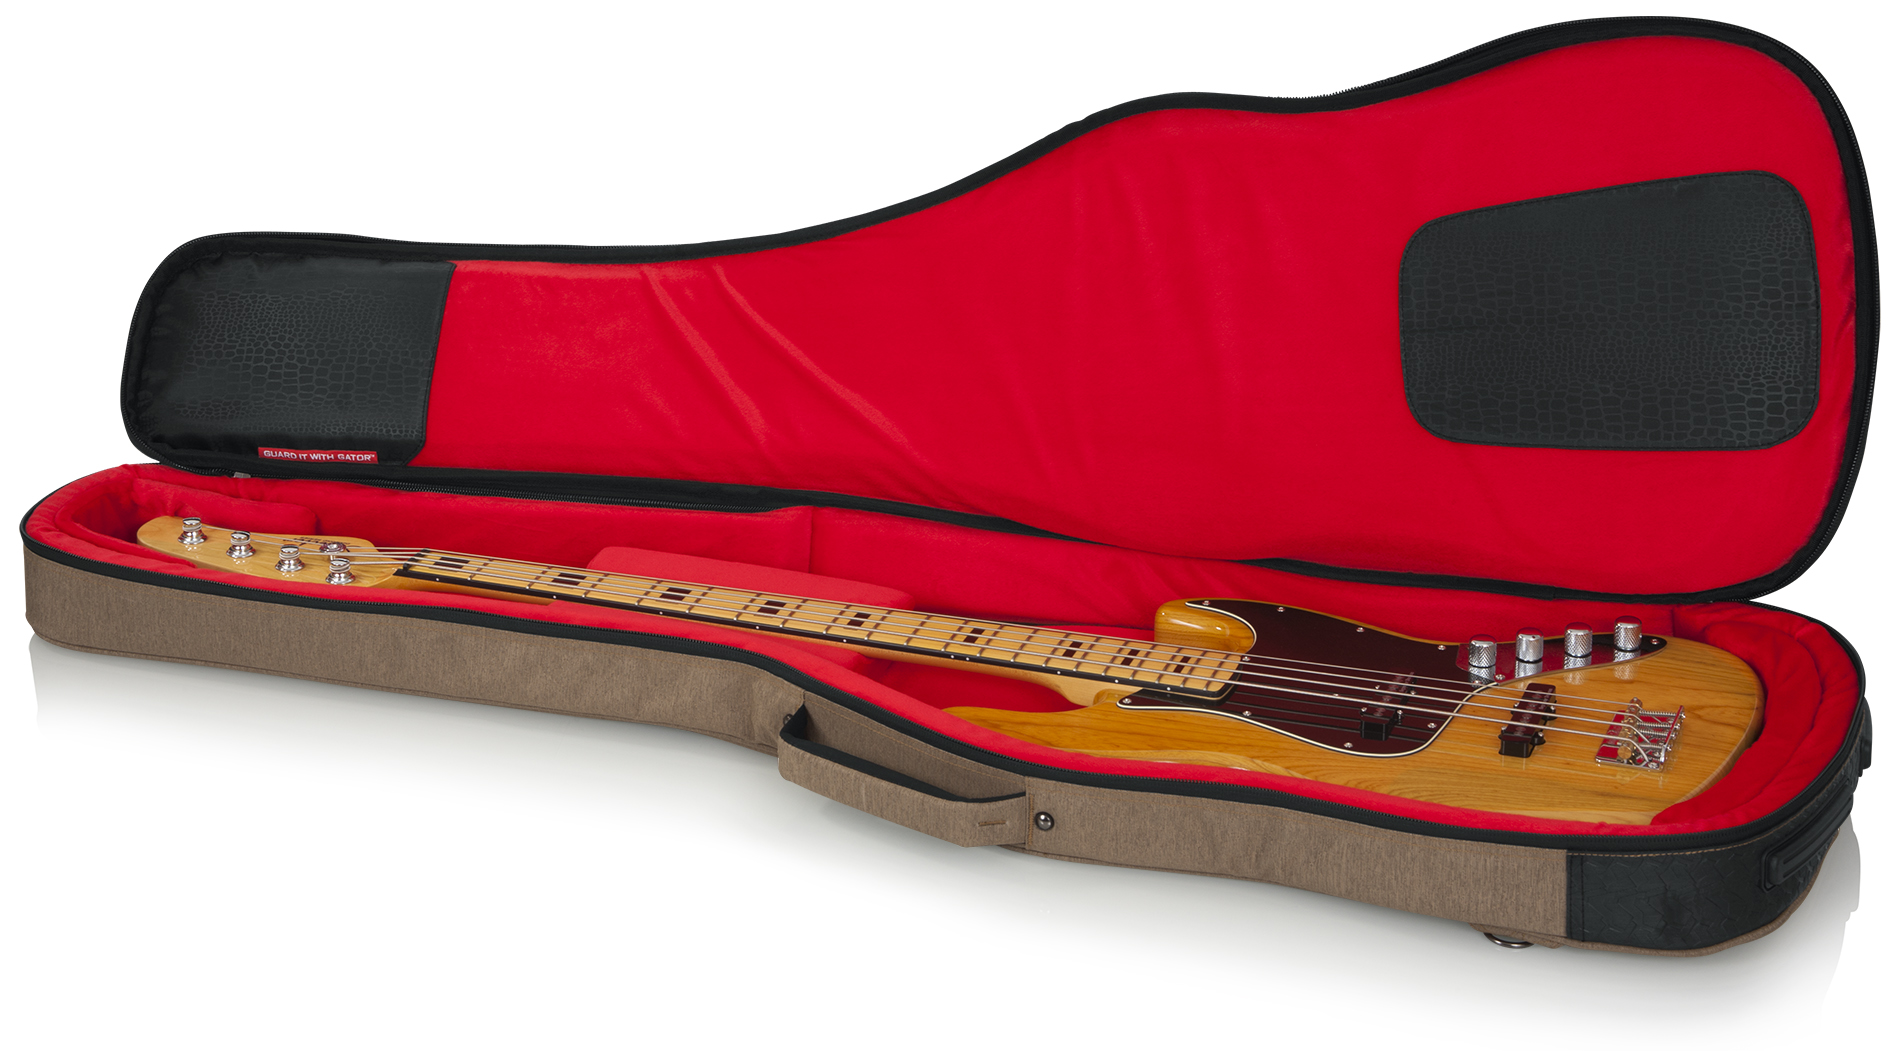 Transit Bass Guitar Bag; Tan-GT-BASS-TAN